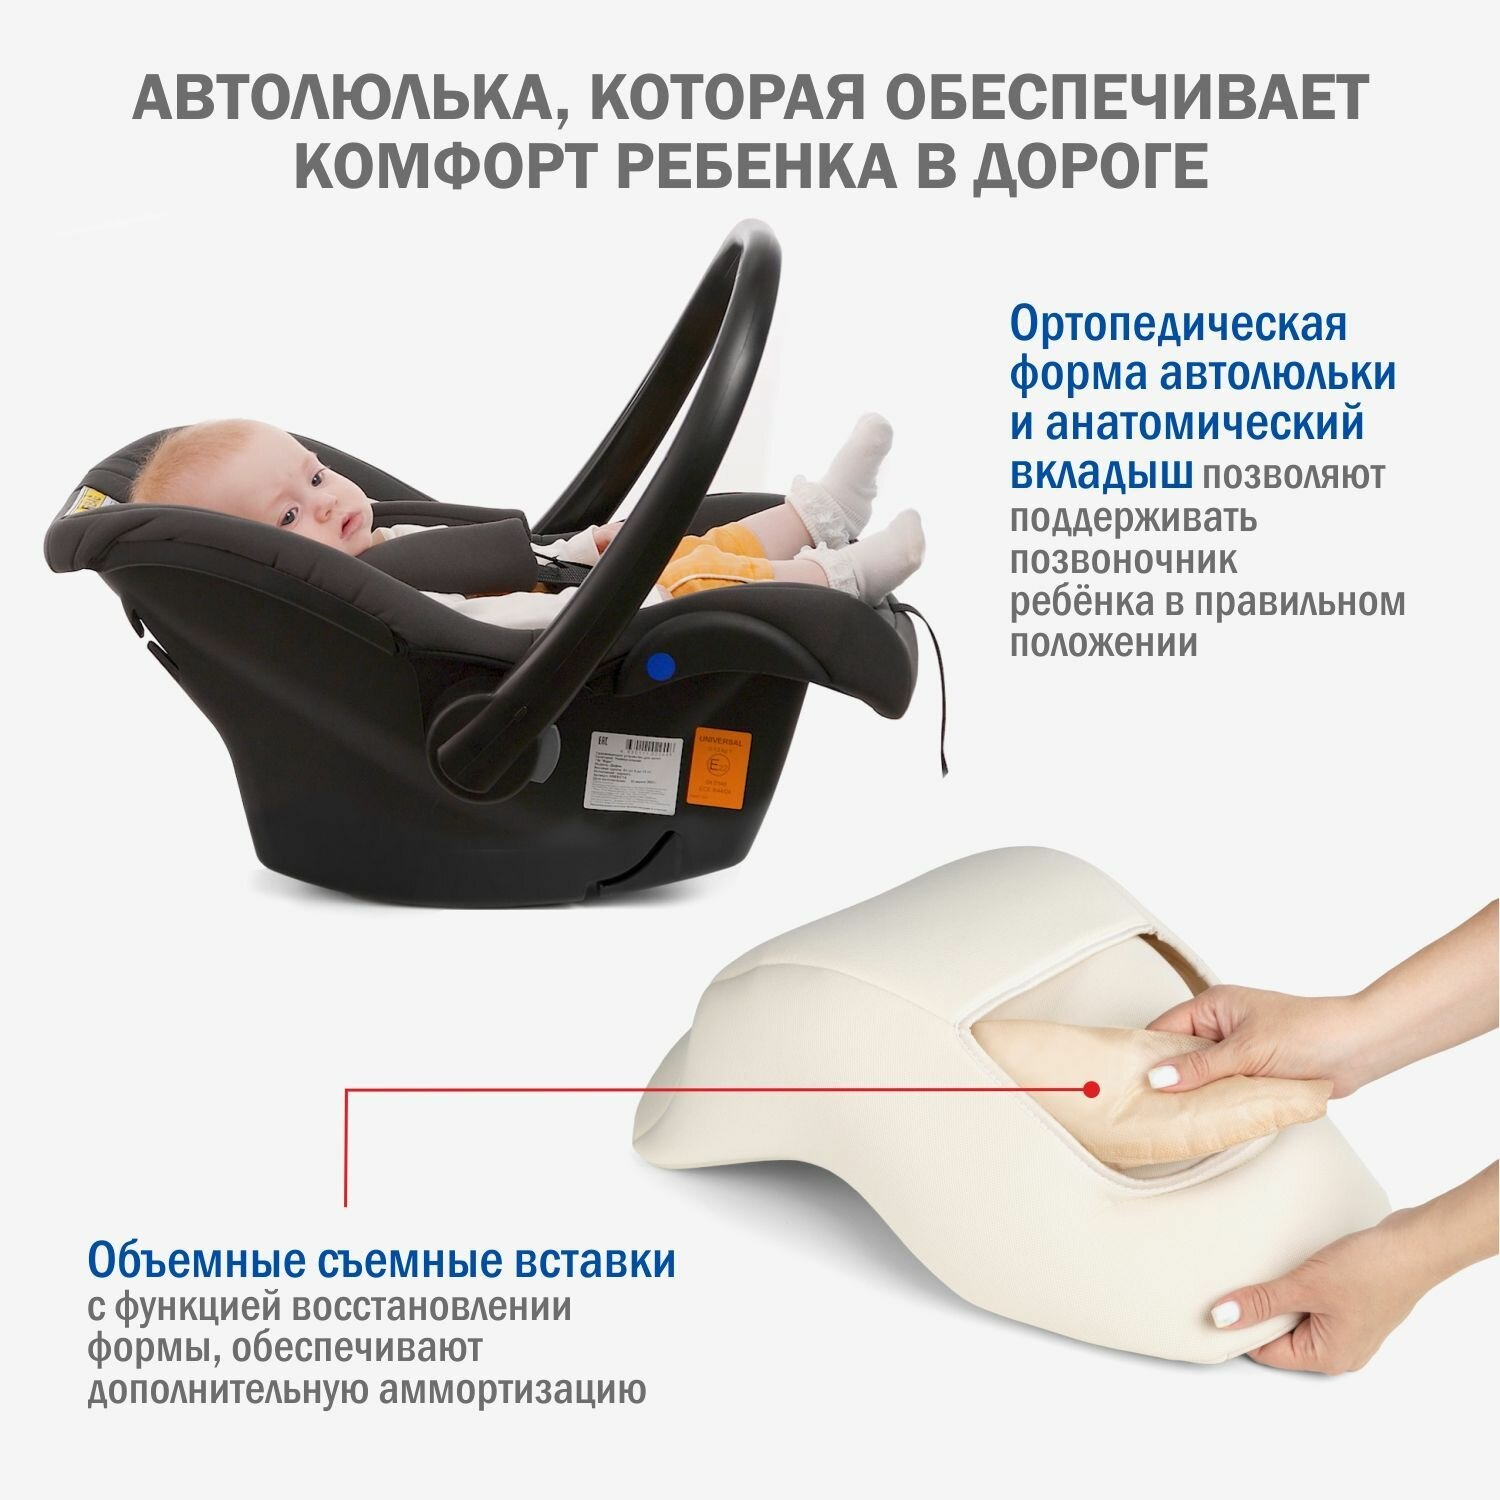 Автокресло детское, автолюлька для новорожденных Siger Дафни от 0 до 13 кг, цвет маренго